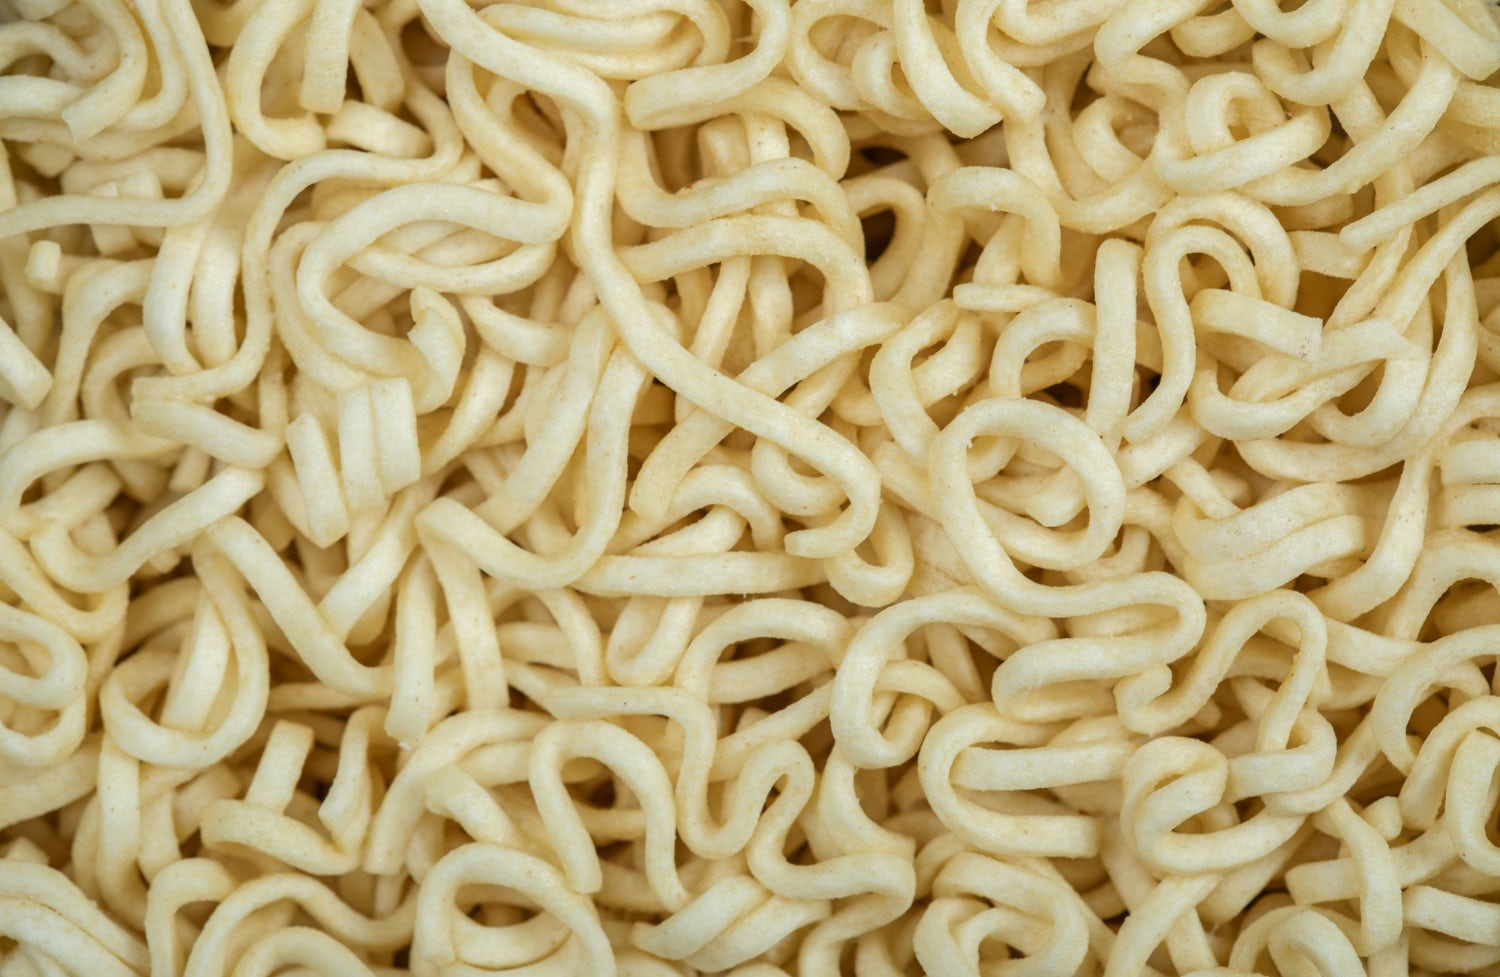 Let’s make instant noodles